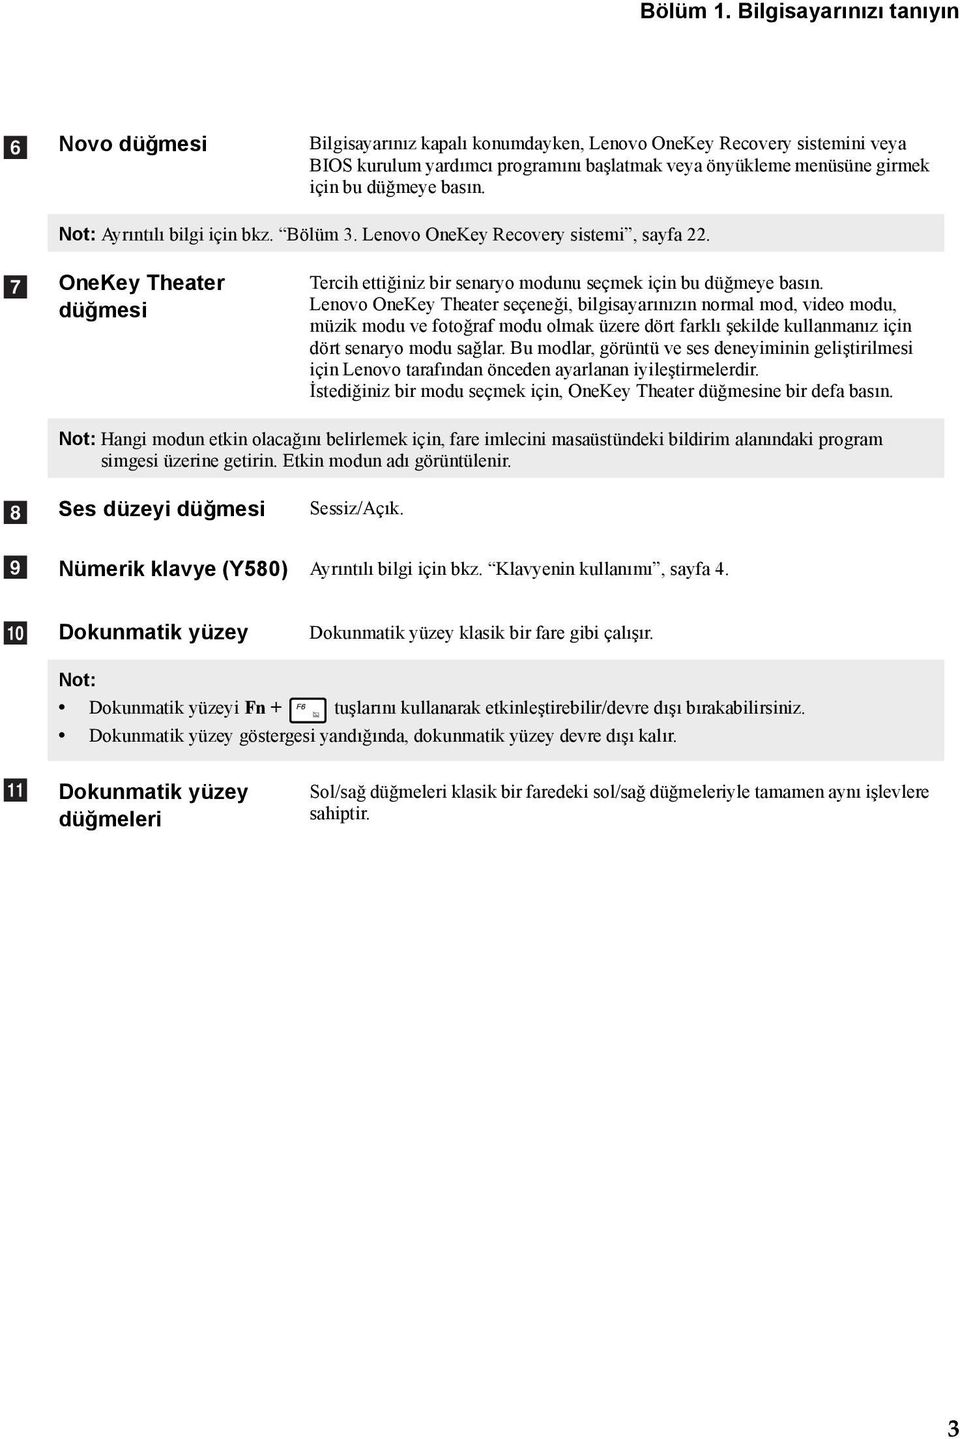 düğmeye basın. Not: Ayrıntılı bilgi için bkz. Bölüm 3. Lenovo OneKey Recovery sistemi, sayfa 22. g OneKey Theater düğmesi Tercih ettiğiniz bir senaryo modunu seçmek için bu düğmeye basın.